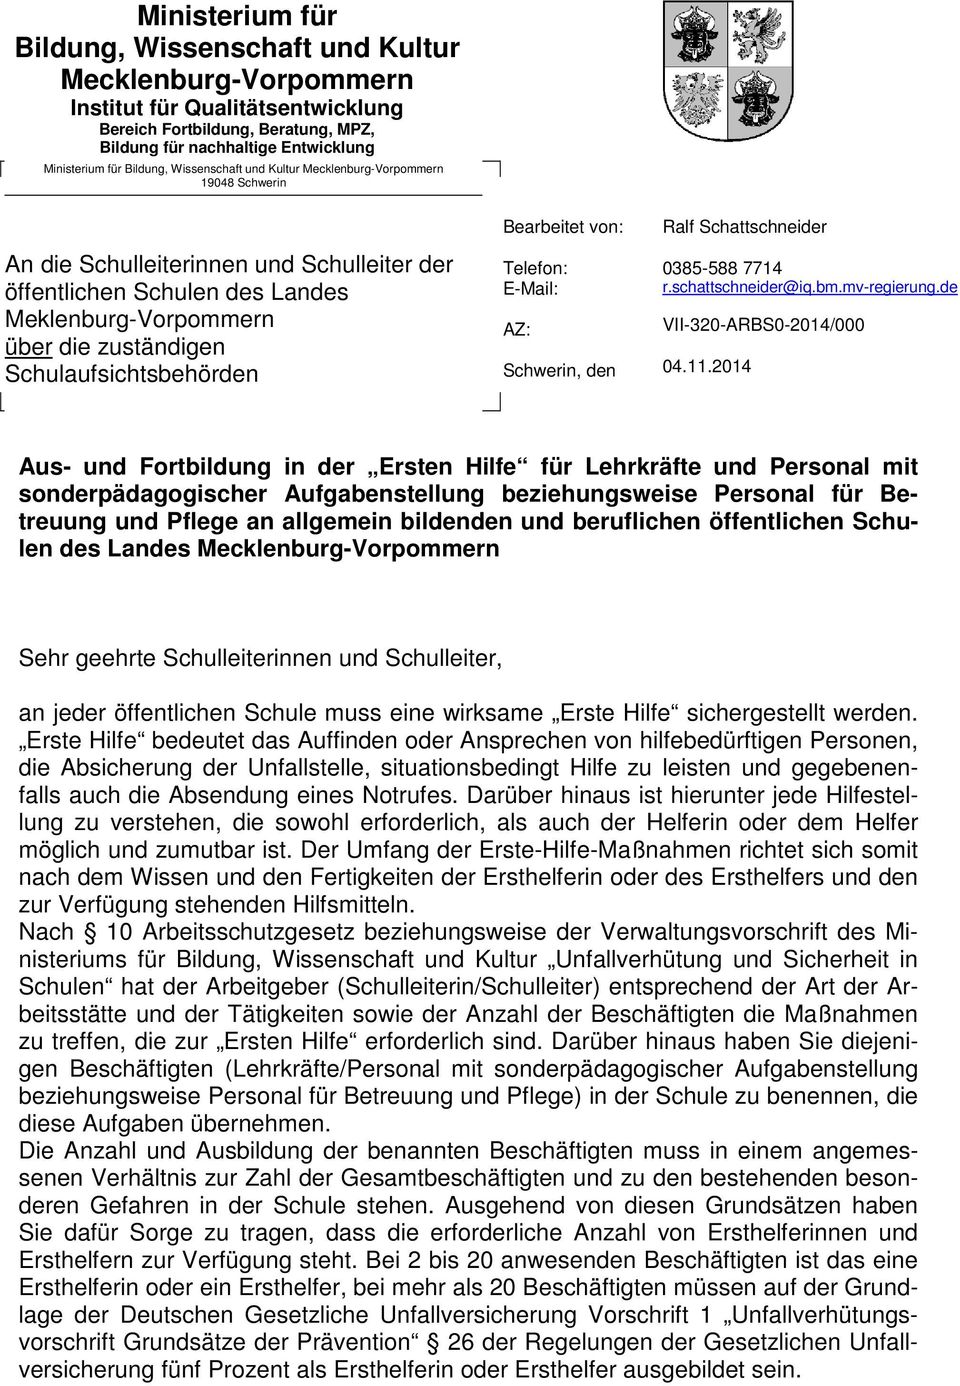 Schulaufsichtsbehörden Bearbeitet von: Telefon: E-Mail: AZ: Schwerin, den Ralf Schattschneider 0385-588 7714 r.schattschneider@iq.bm.mv-regierung.de VII-320-ARBS0-2014/000 04.11.